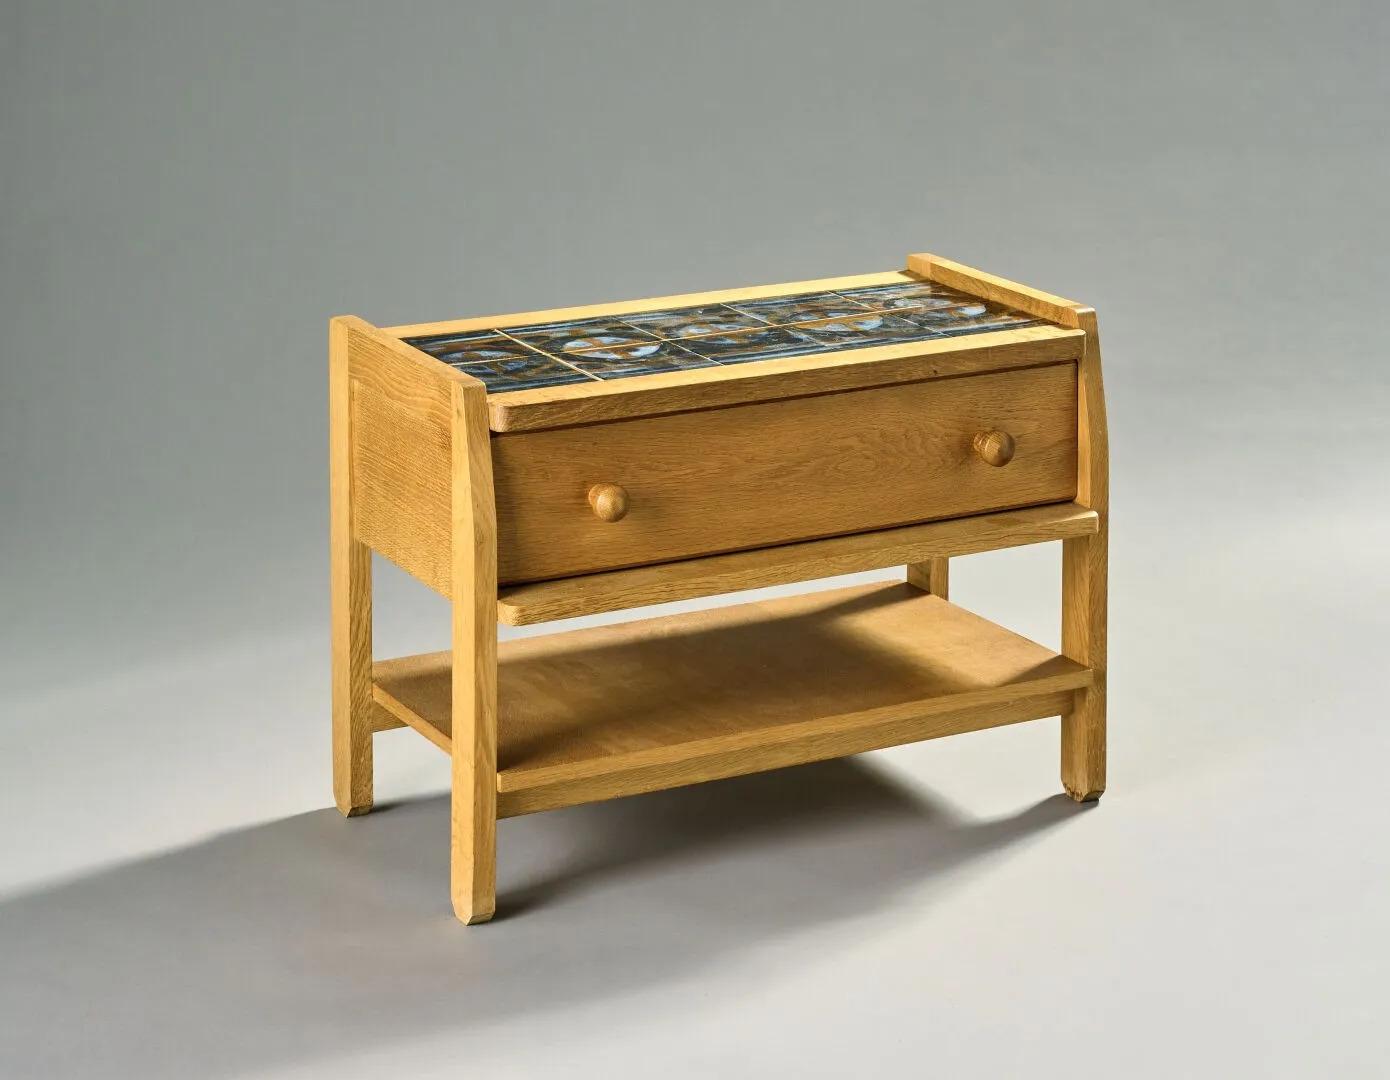 Guillerme et Chambron, meuble d'appoint en chêne et céramique vers 1960/1970.
Édition 